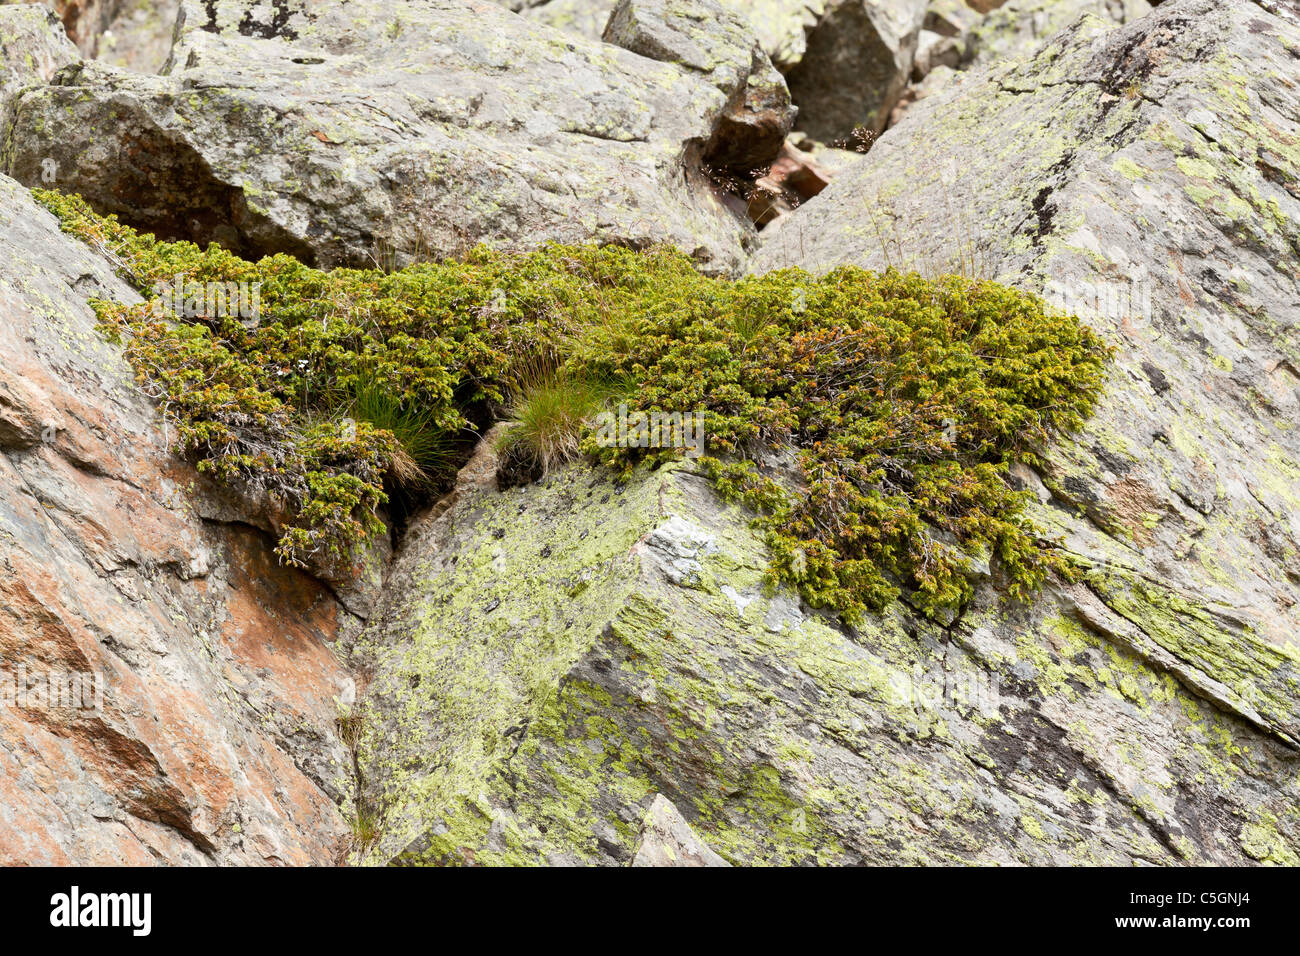 Common juniper, Alpine juniper, Juniperus communis alpina, Valgrisenche, Italy Stock Photo